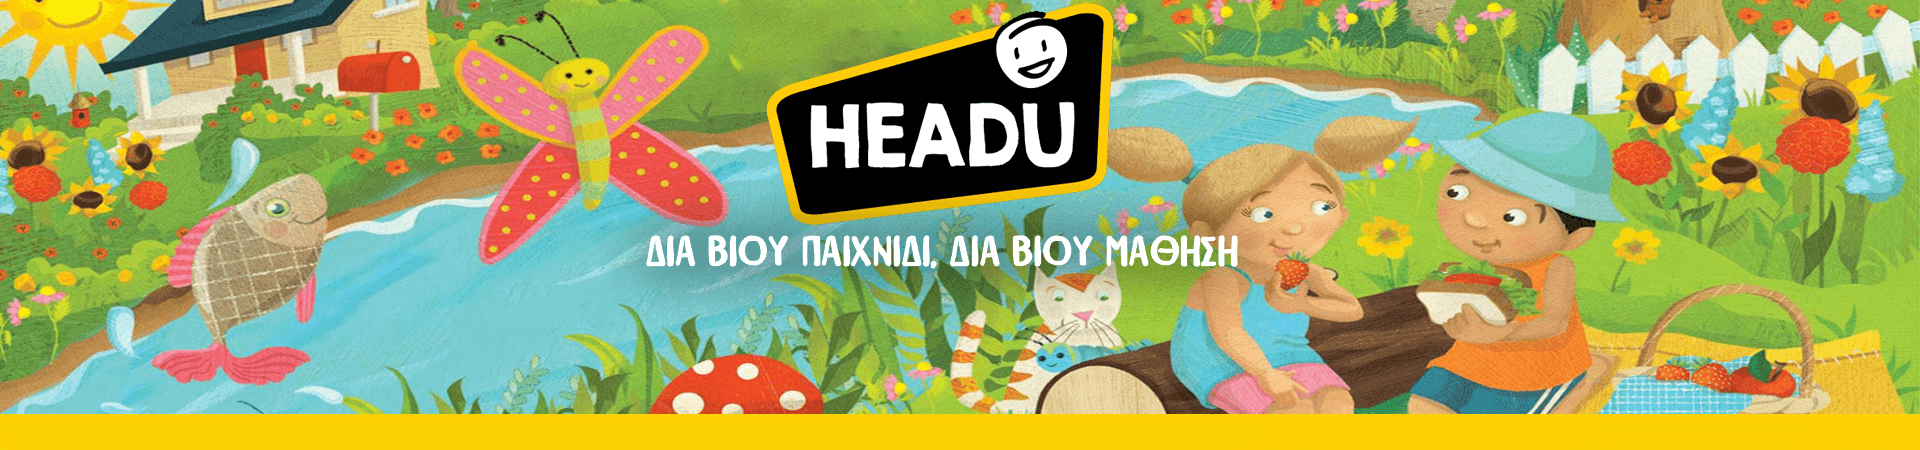 Εκπαιδευτικα Παιγνιδια HEADU - Ludic